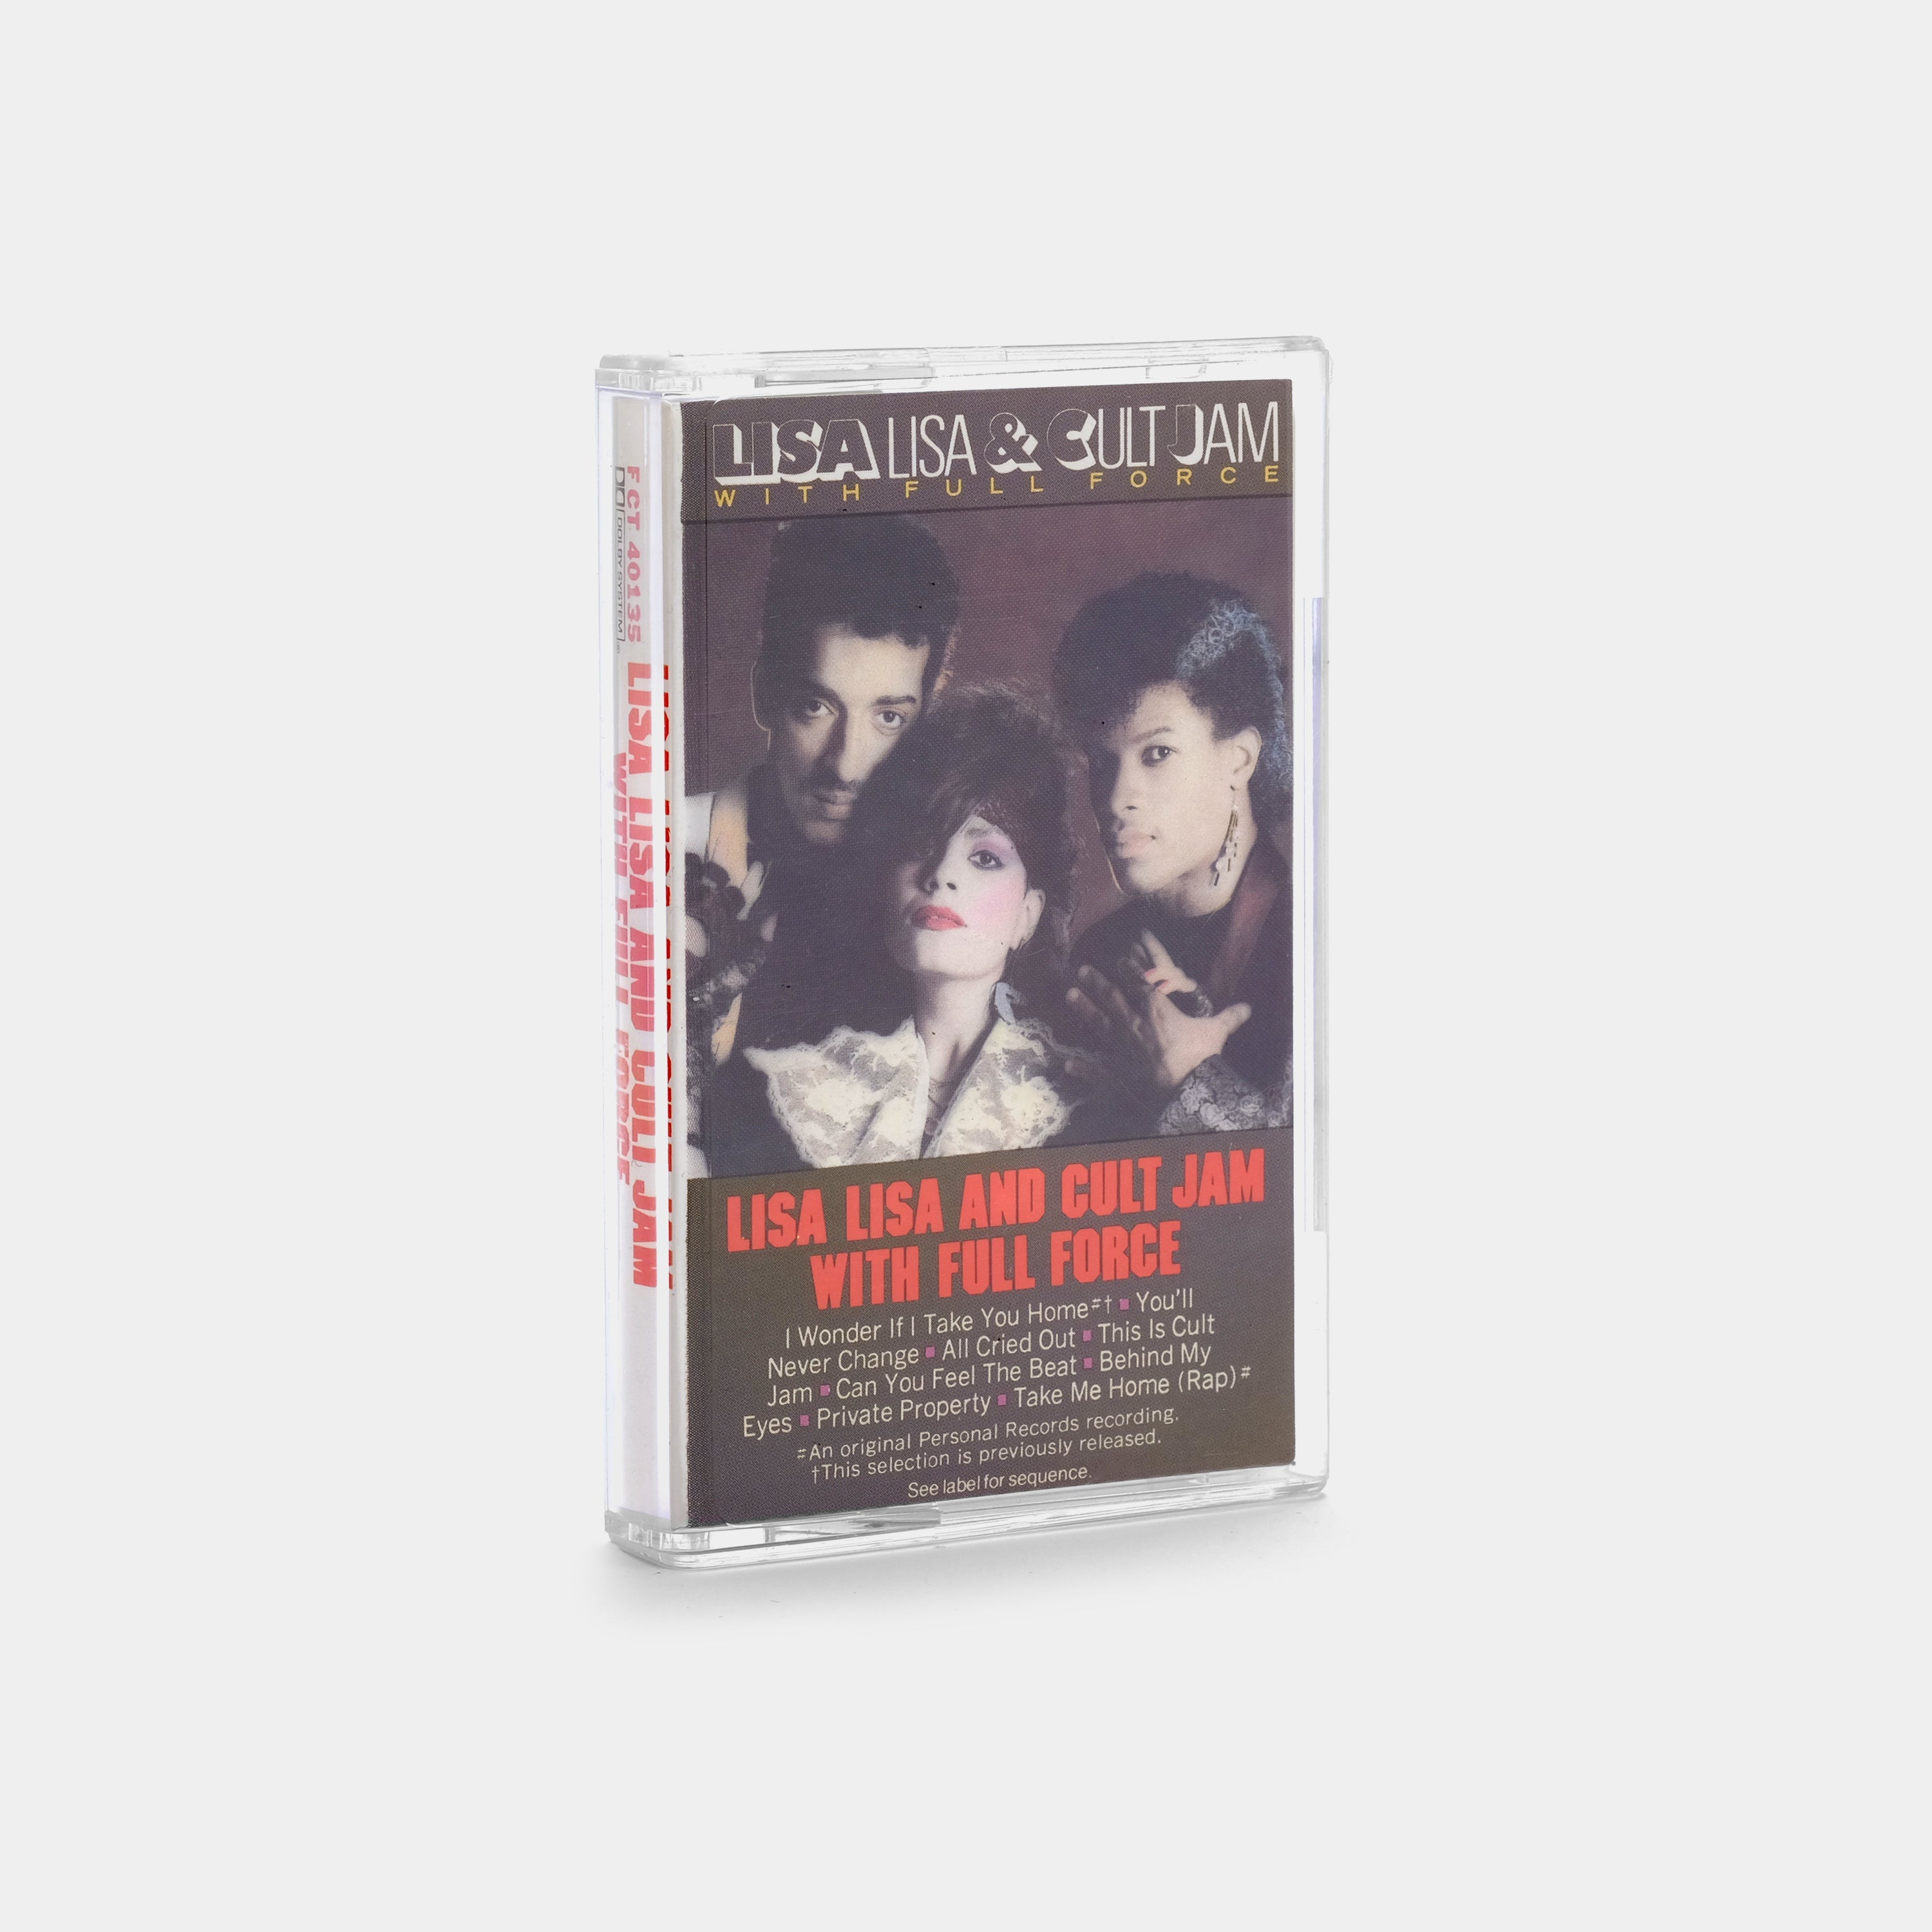 Lisa Lisa & Cult Jam with Full Force - Lisa Lisa & Cult Jam with Full Force Cassette Tape